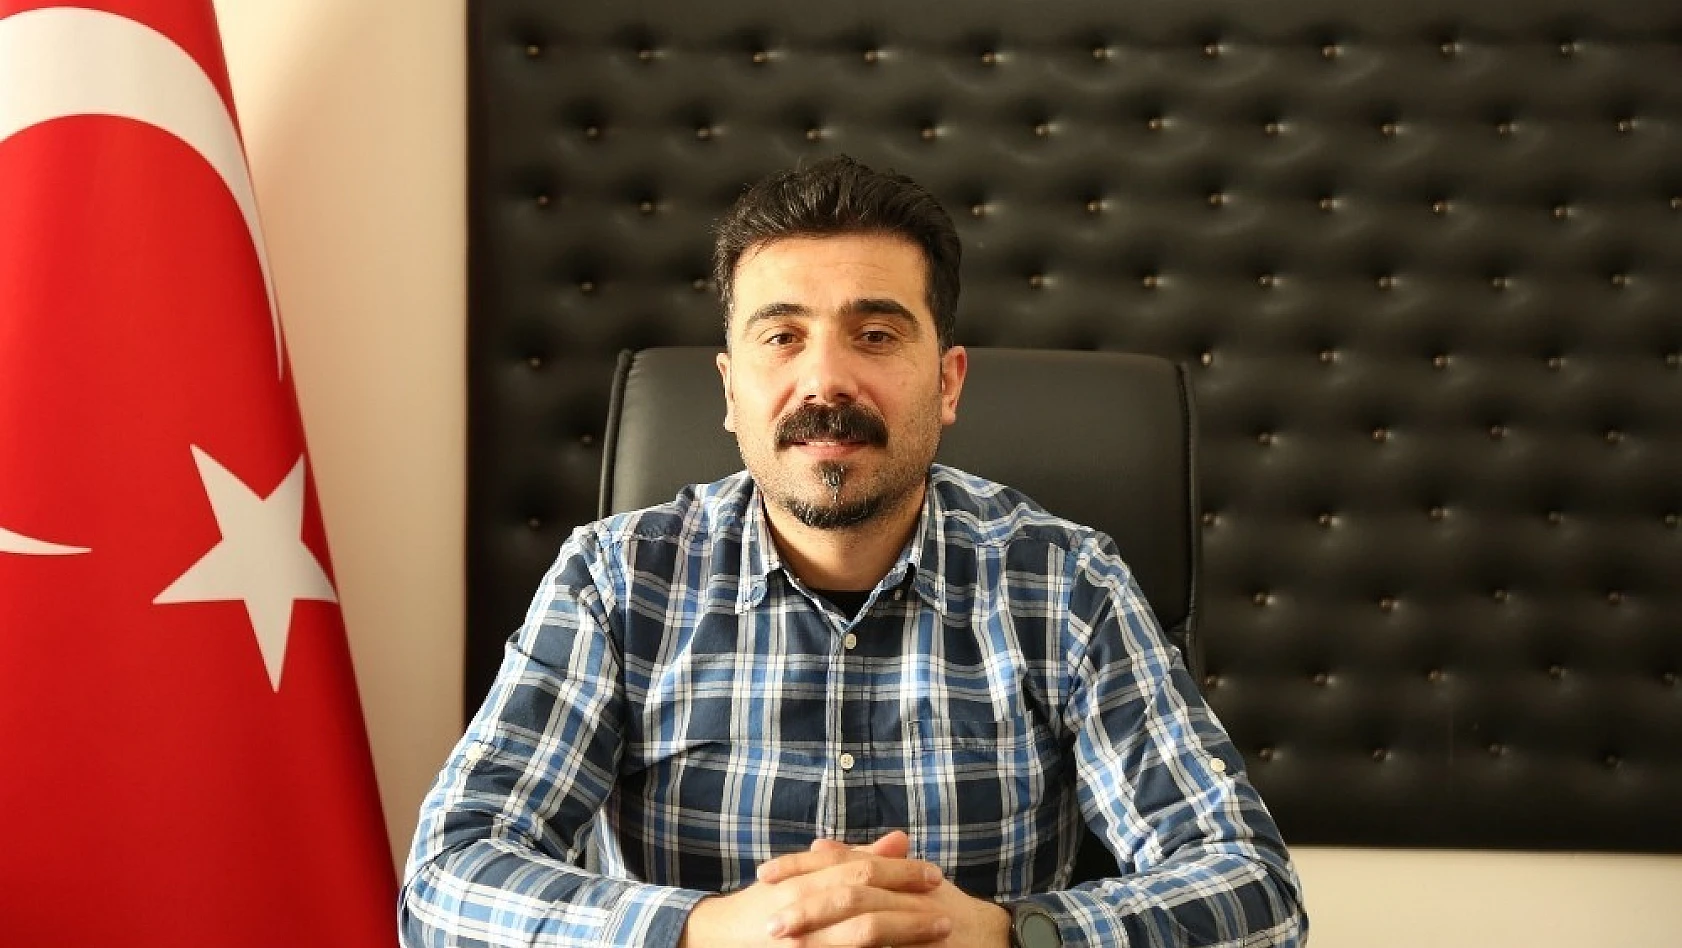 AK Partili Arasan' Tunceli'de avcılığı kökten yasaklamayı düşünüyoruz' 